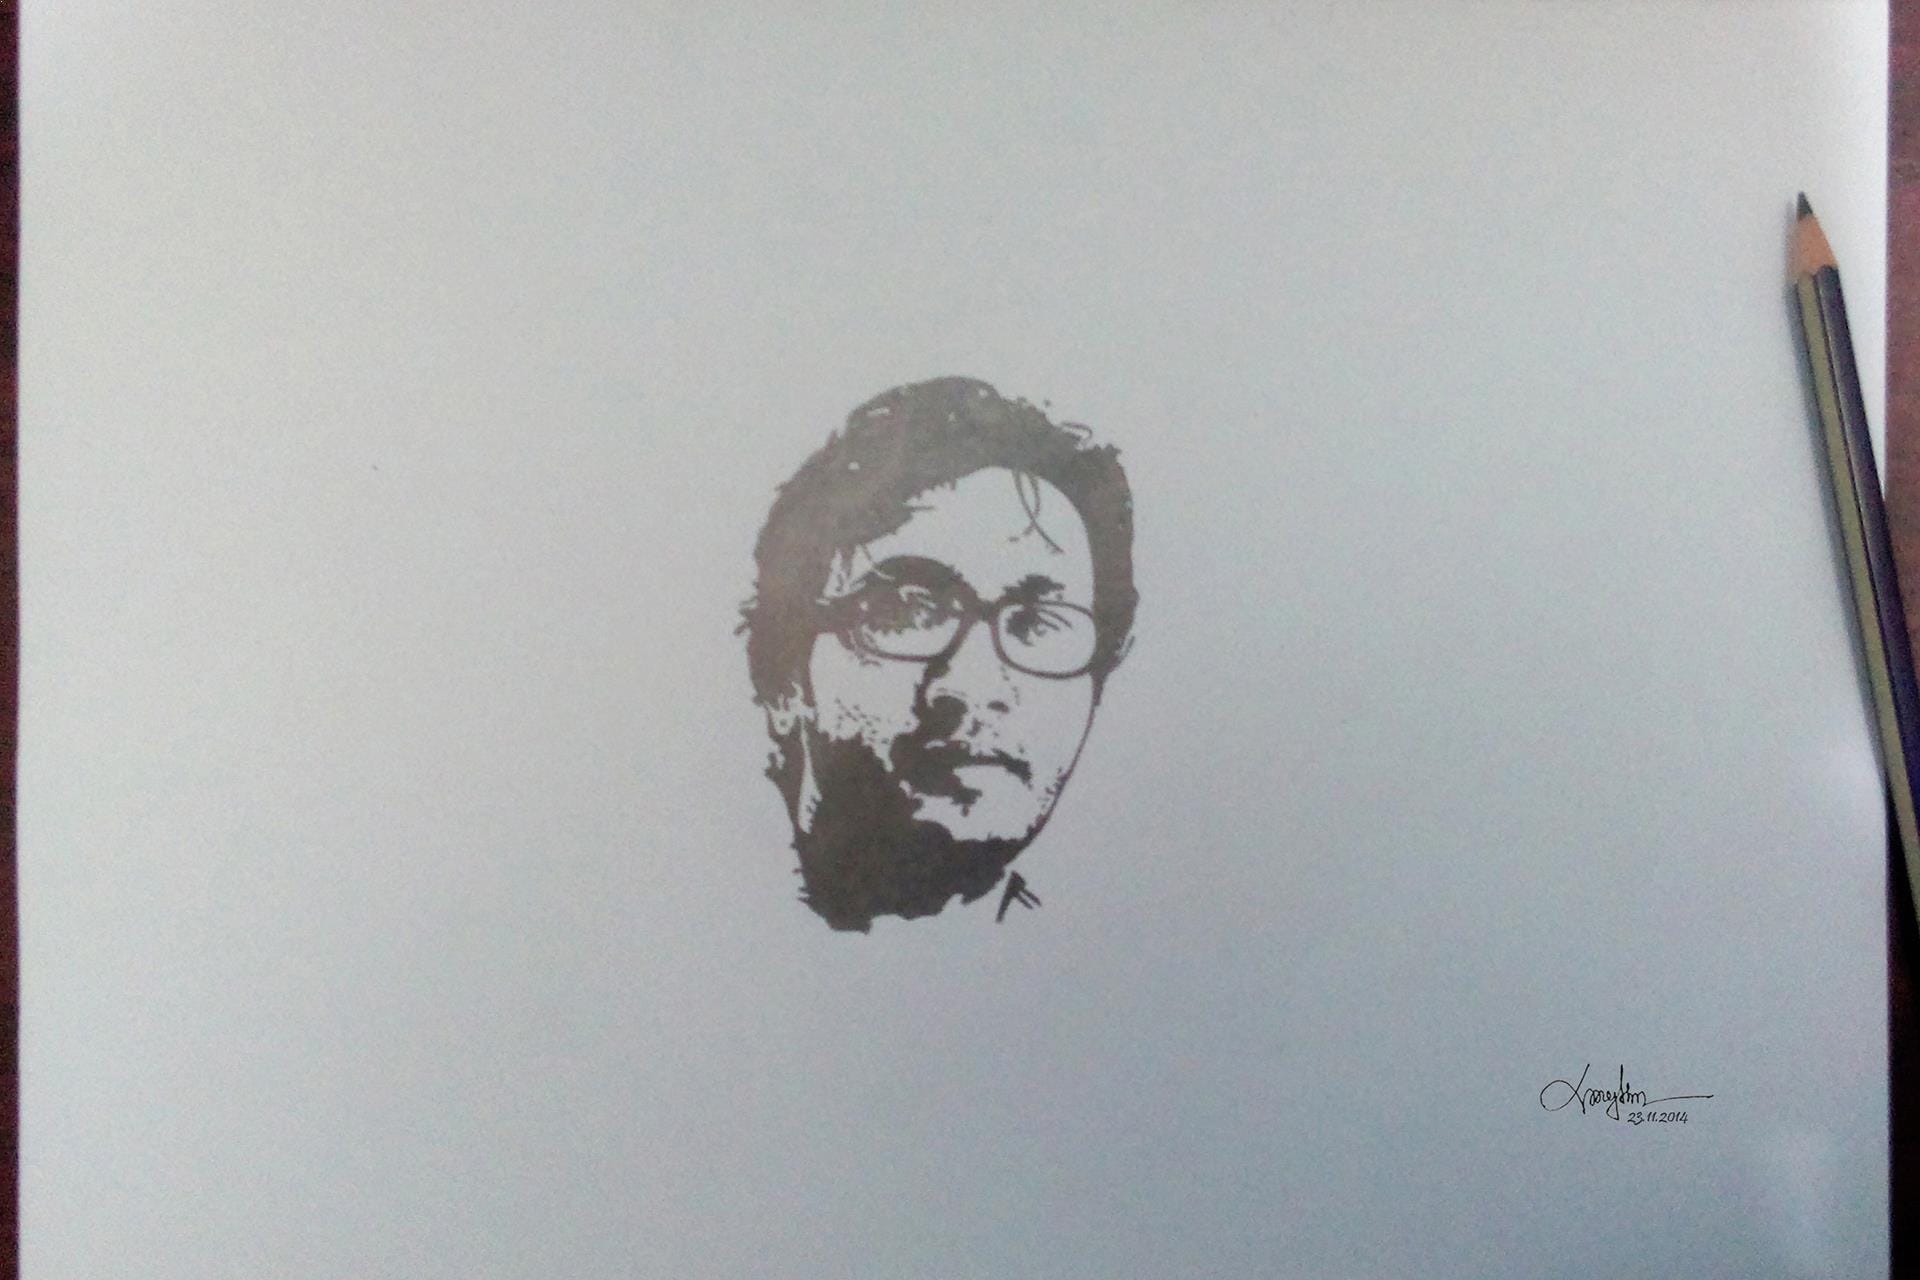 Avishek Ahmed sketch by Rhythm Shahriar